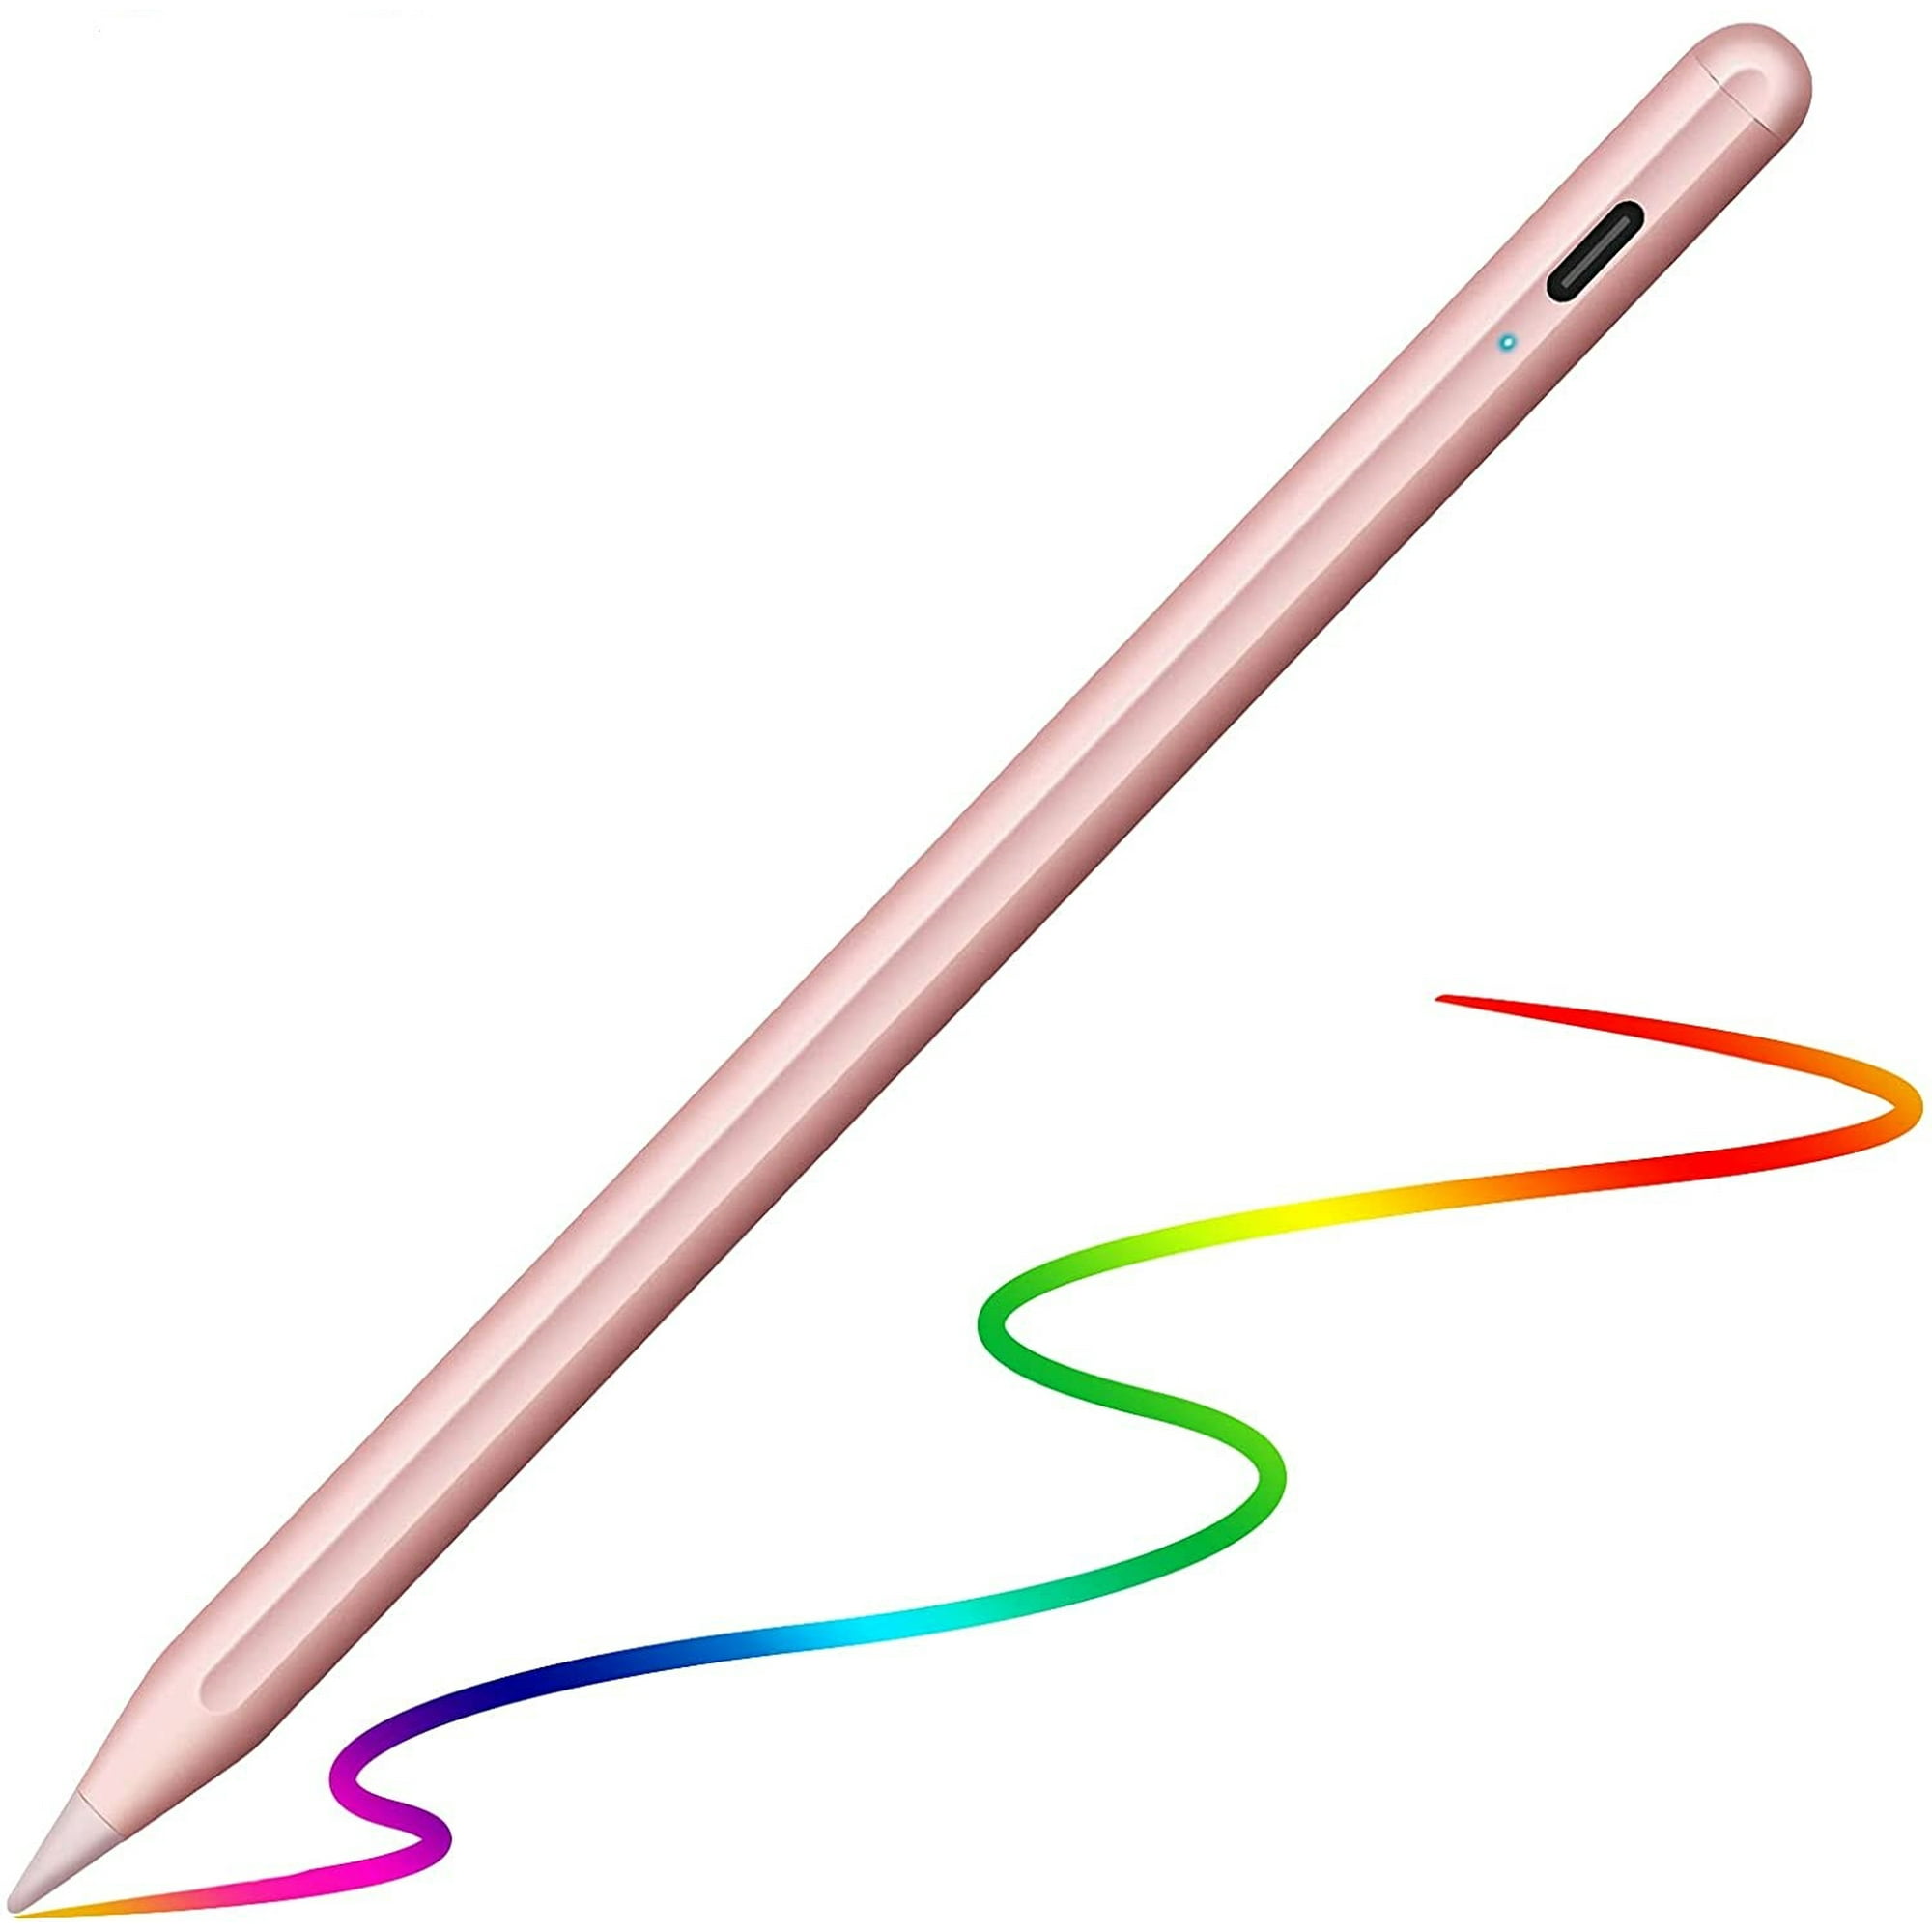 Lápiz Capacitivo Universal Para Tablet Teléfono Móvil Táctil Para IOS  Android Windows Para Apple Ipad Pencil Para XIAOMI HUAWEI Stylus Pang Jing